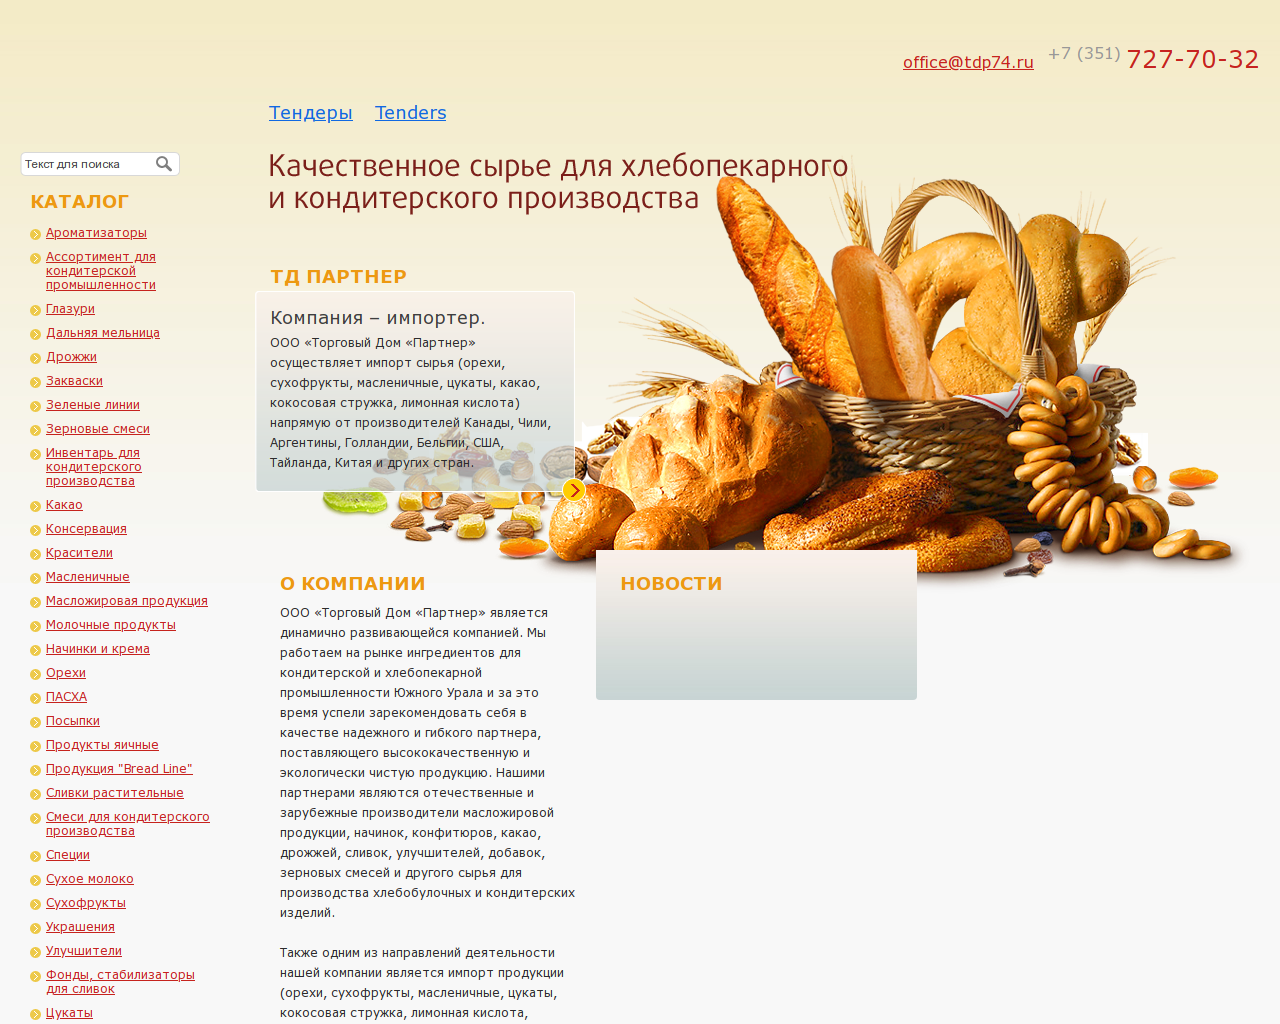 Изображение сайта tdp74.ru в разрешении 1280x1024